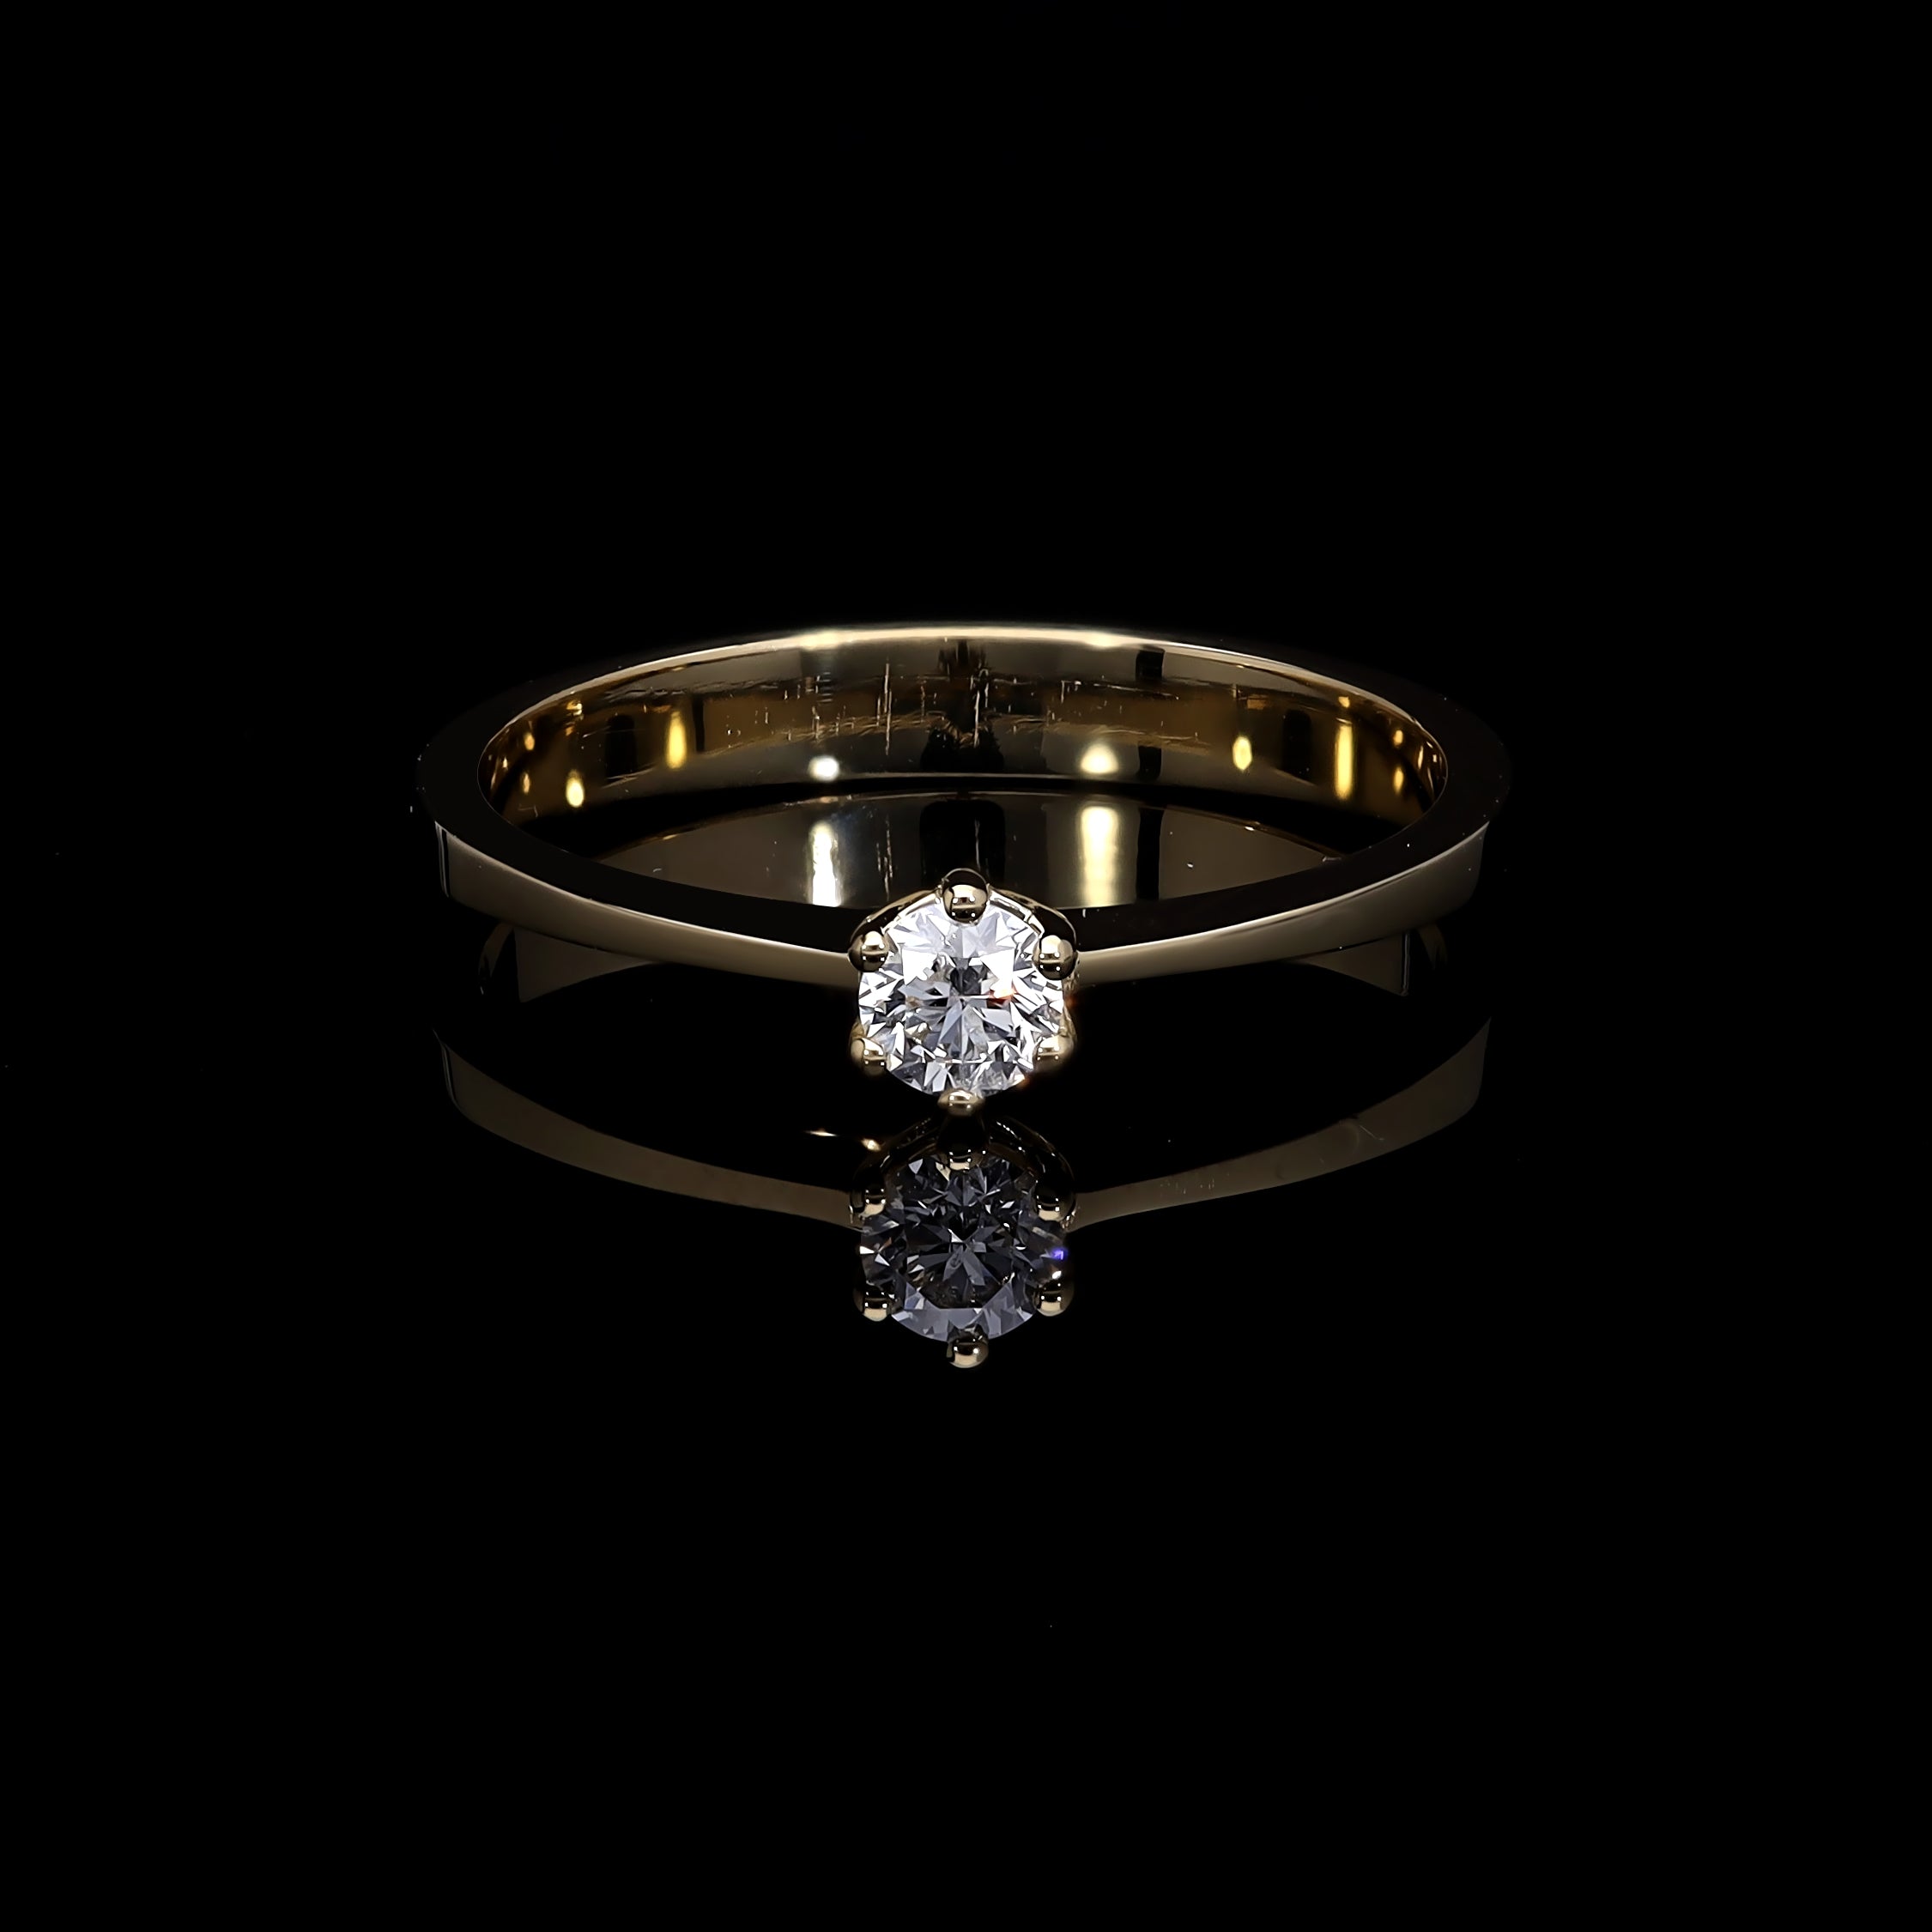 Inel de logodna LDR0295 din aur alb 18k cu diamant - Bijuterii LA ROSA - Verighete si Inele de Logodna, bijuterii cu diamante